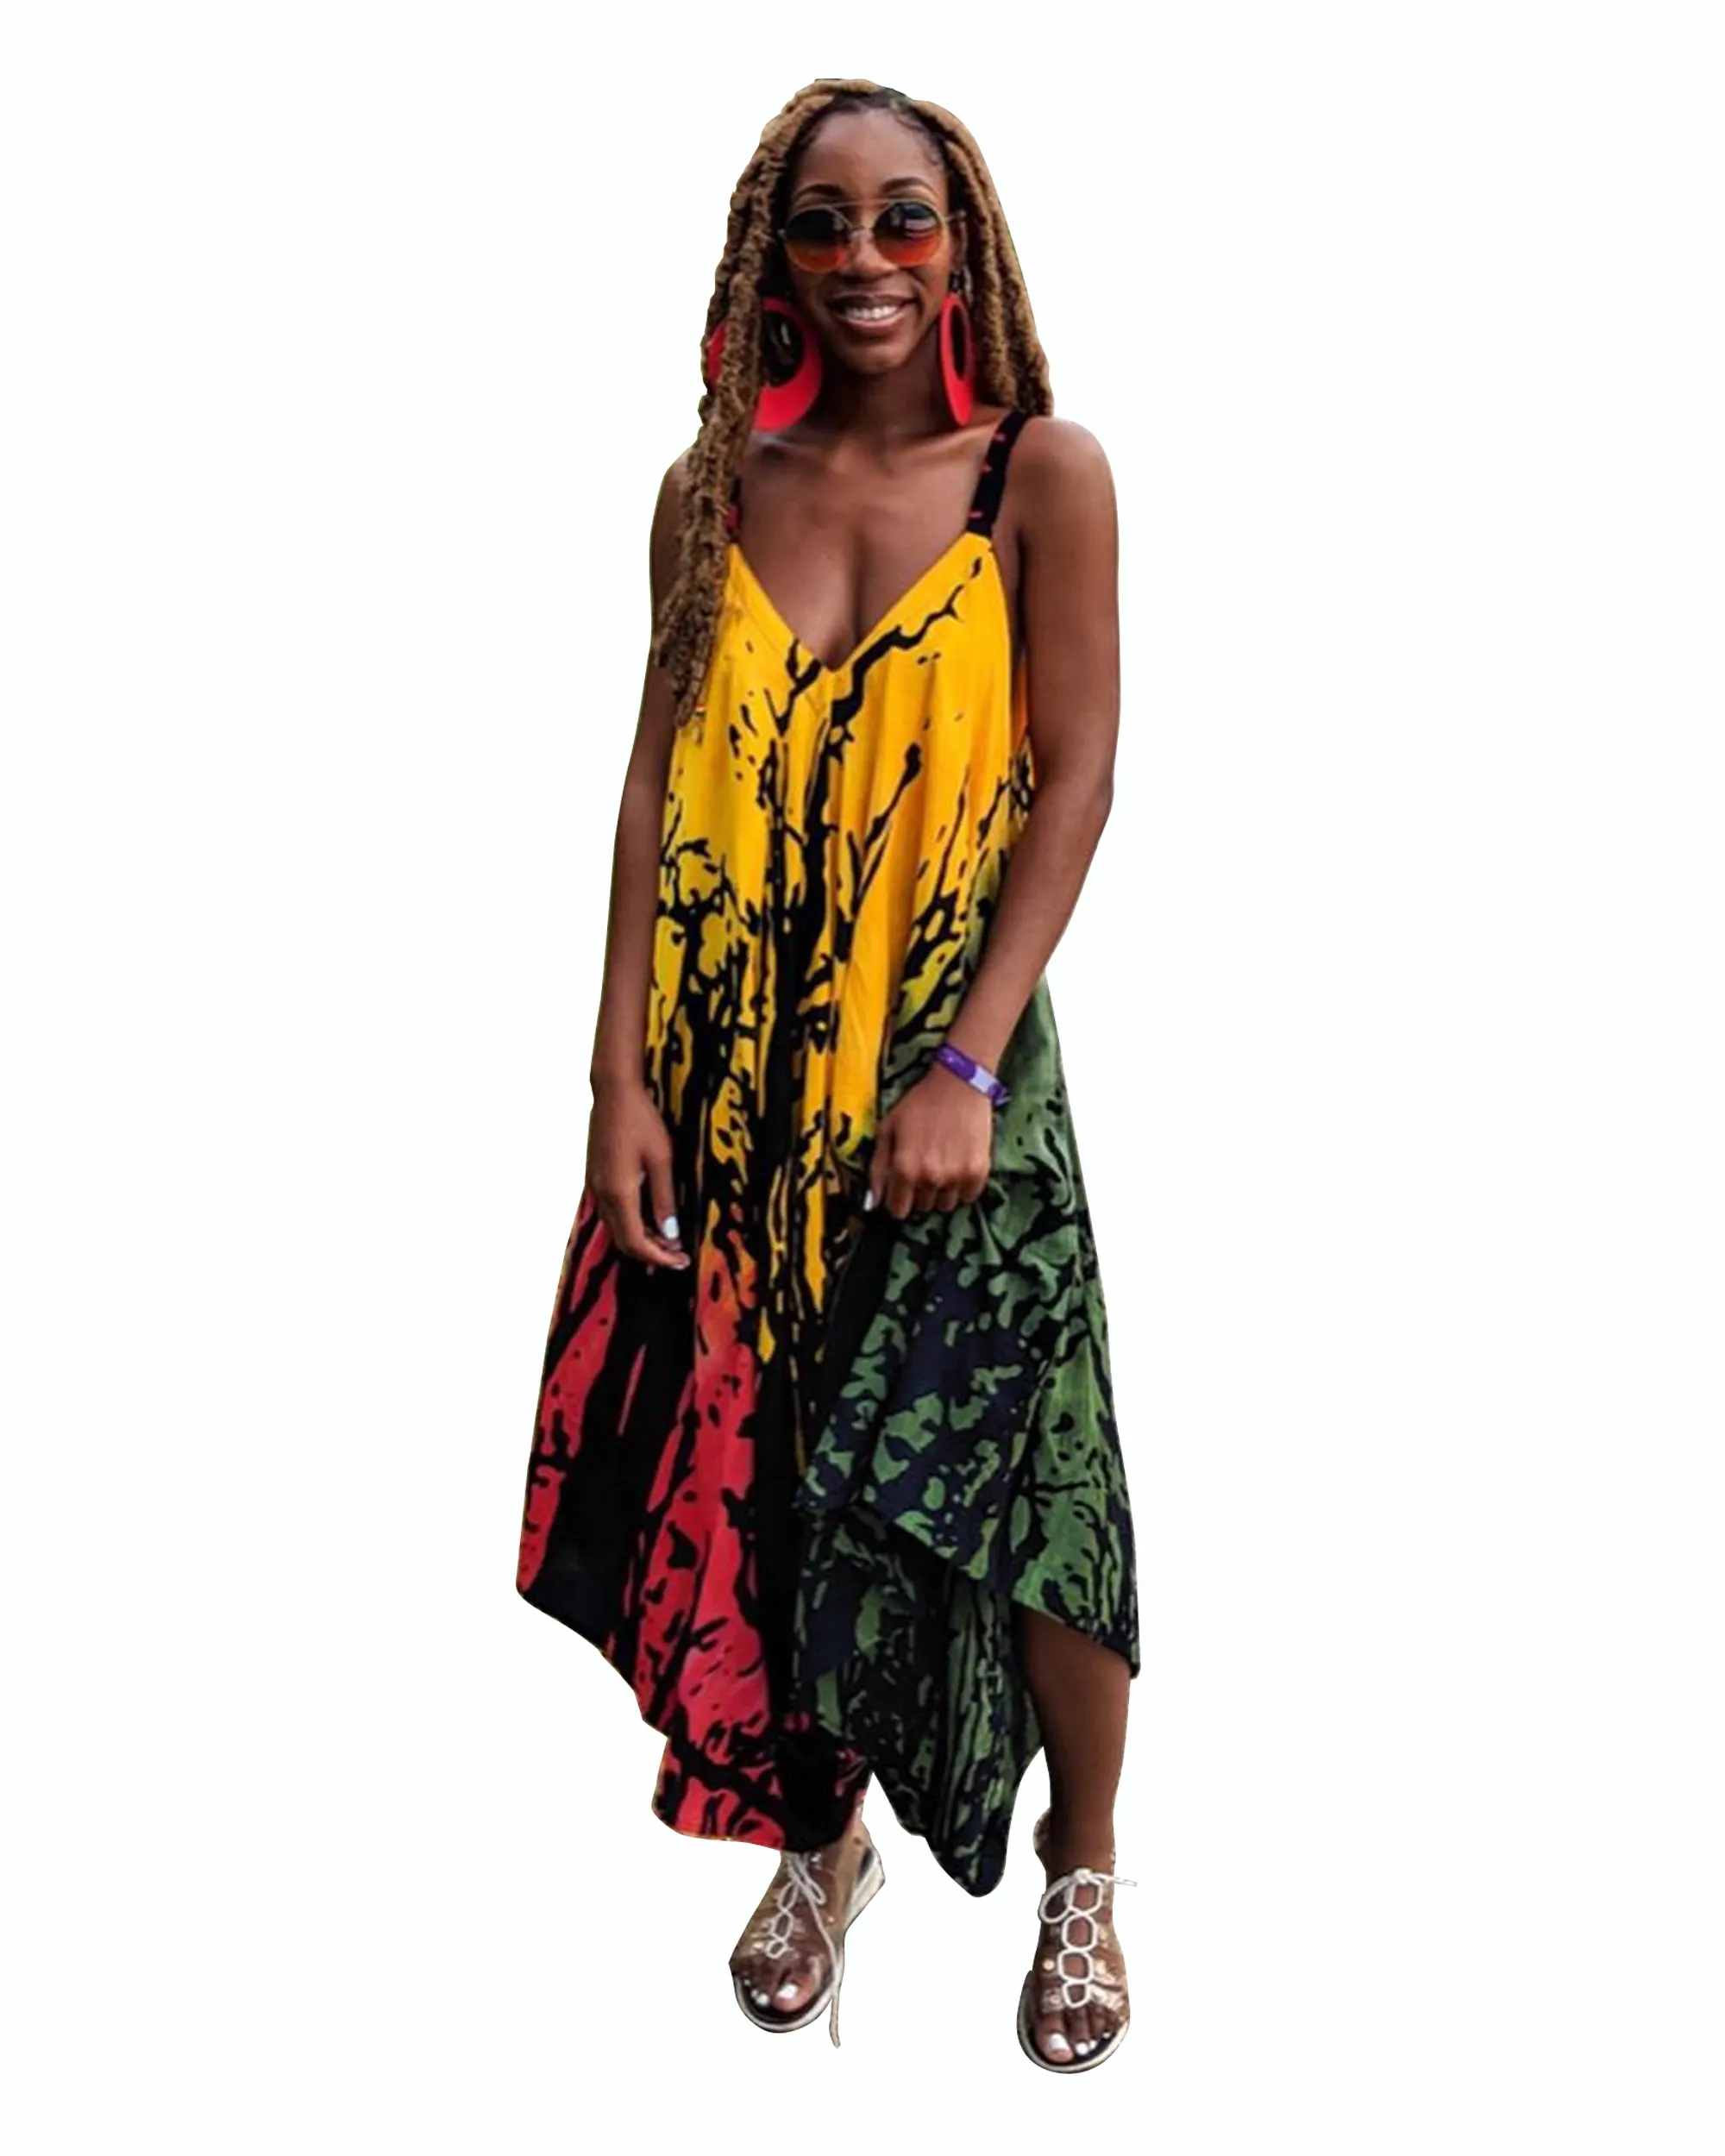 Bn7006-Populaire Verkoopontwerper Voor Dames Herfst Jumpsuit Met Nieuwe Modeprint En Sling Jumpsuit Plus Size Losse Lange Maxi-Jurk Voor Dames